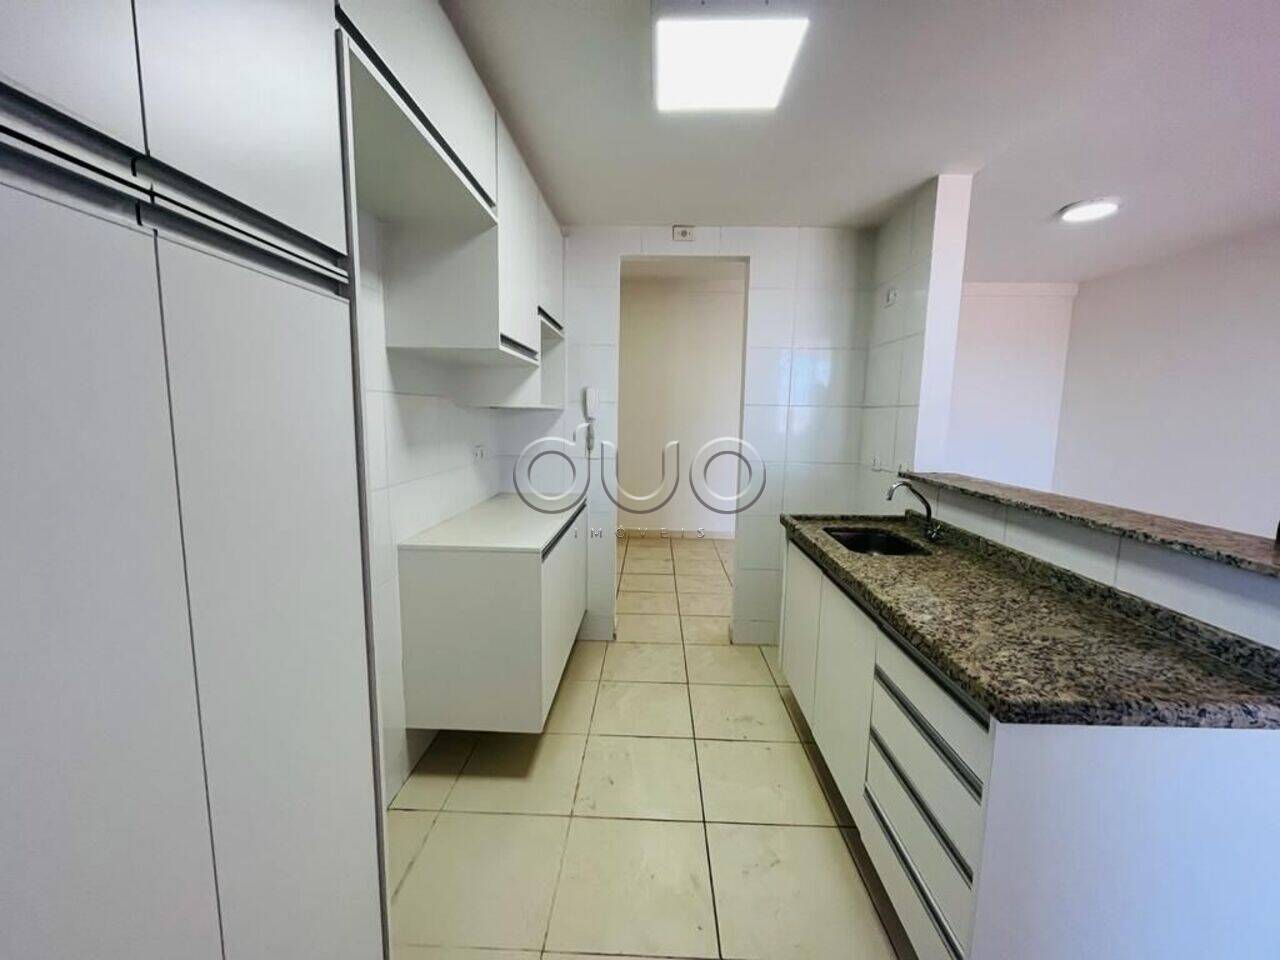 Apartamento com 3 dormitórios à venda, 85 m² por R$ 500.000 - Paulista - Piracicaba/SP